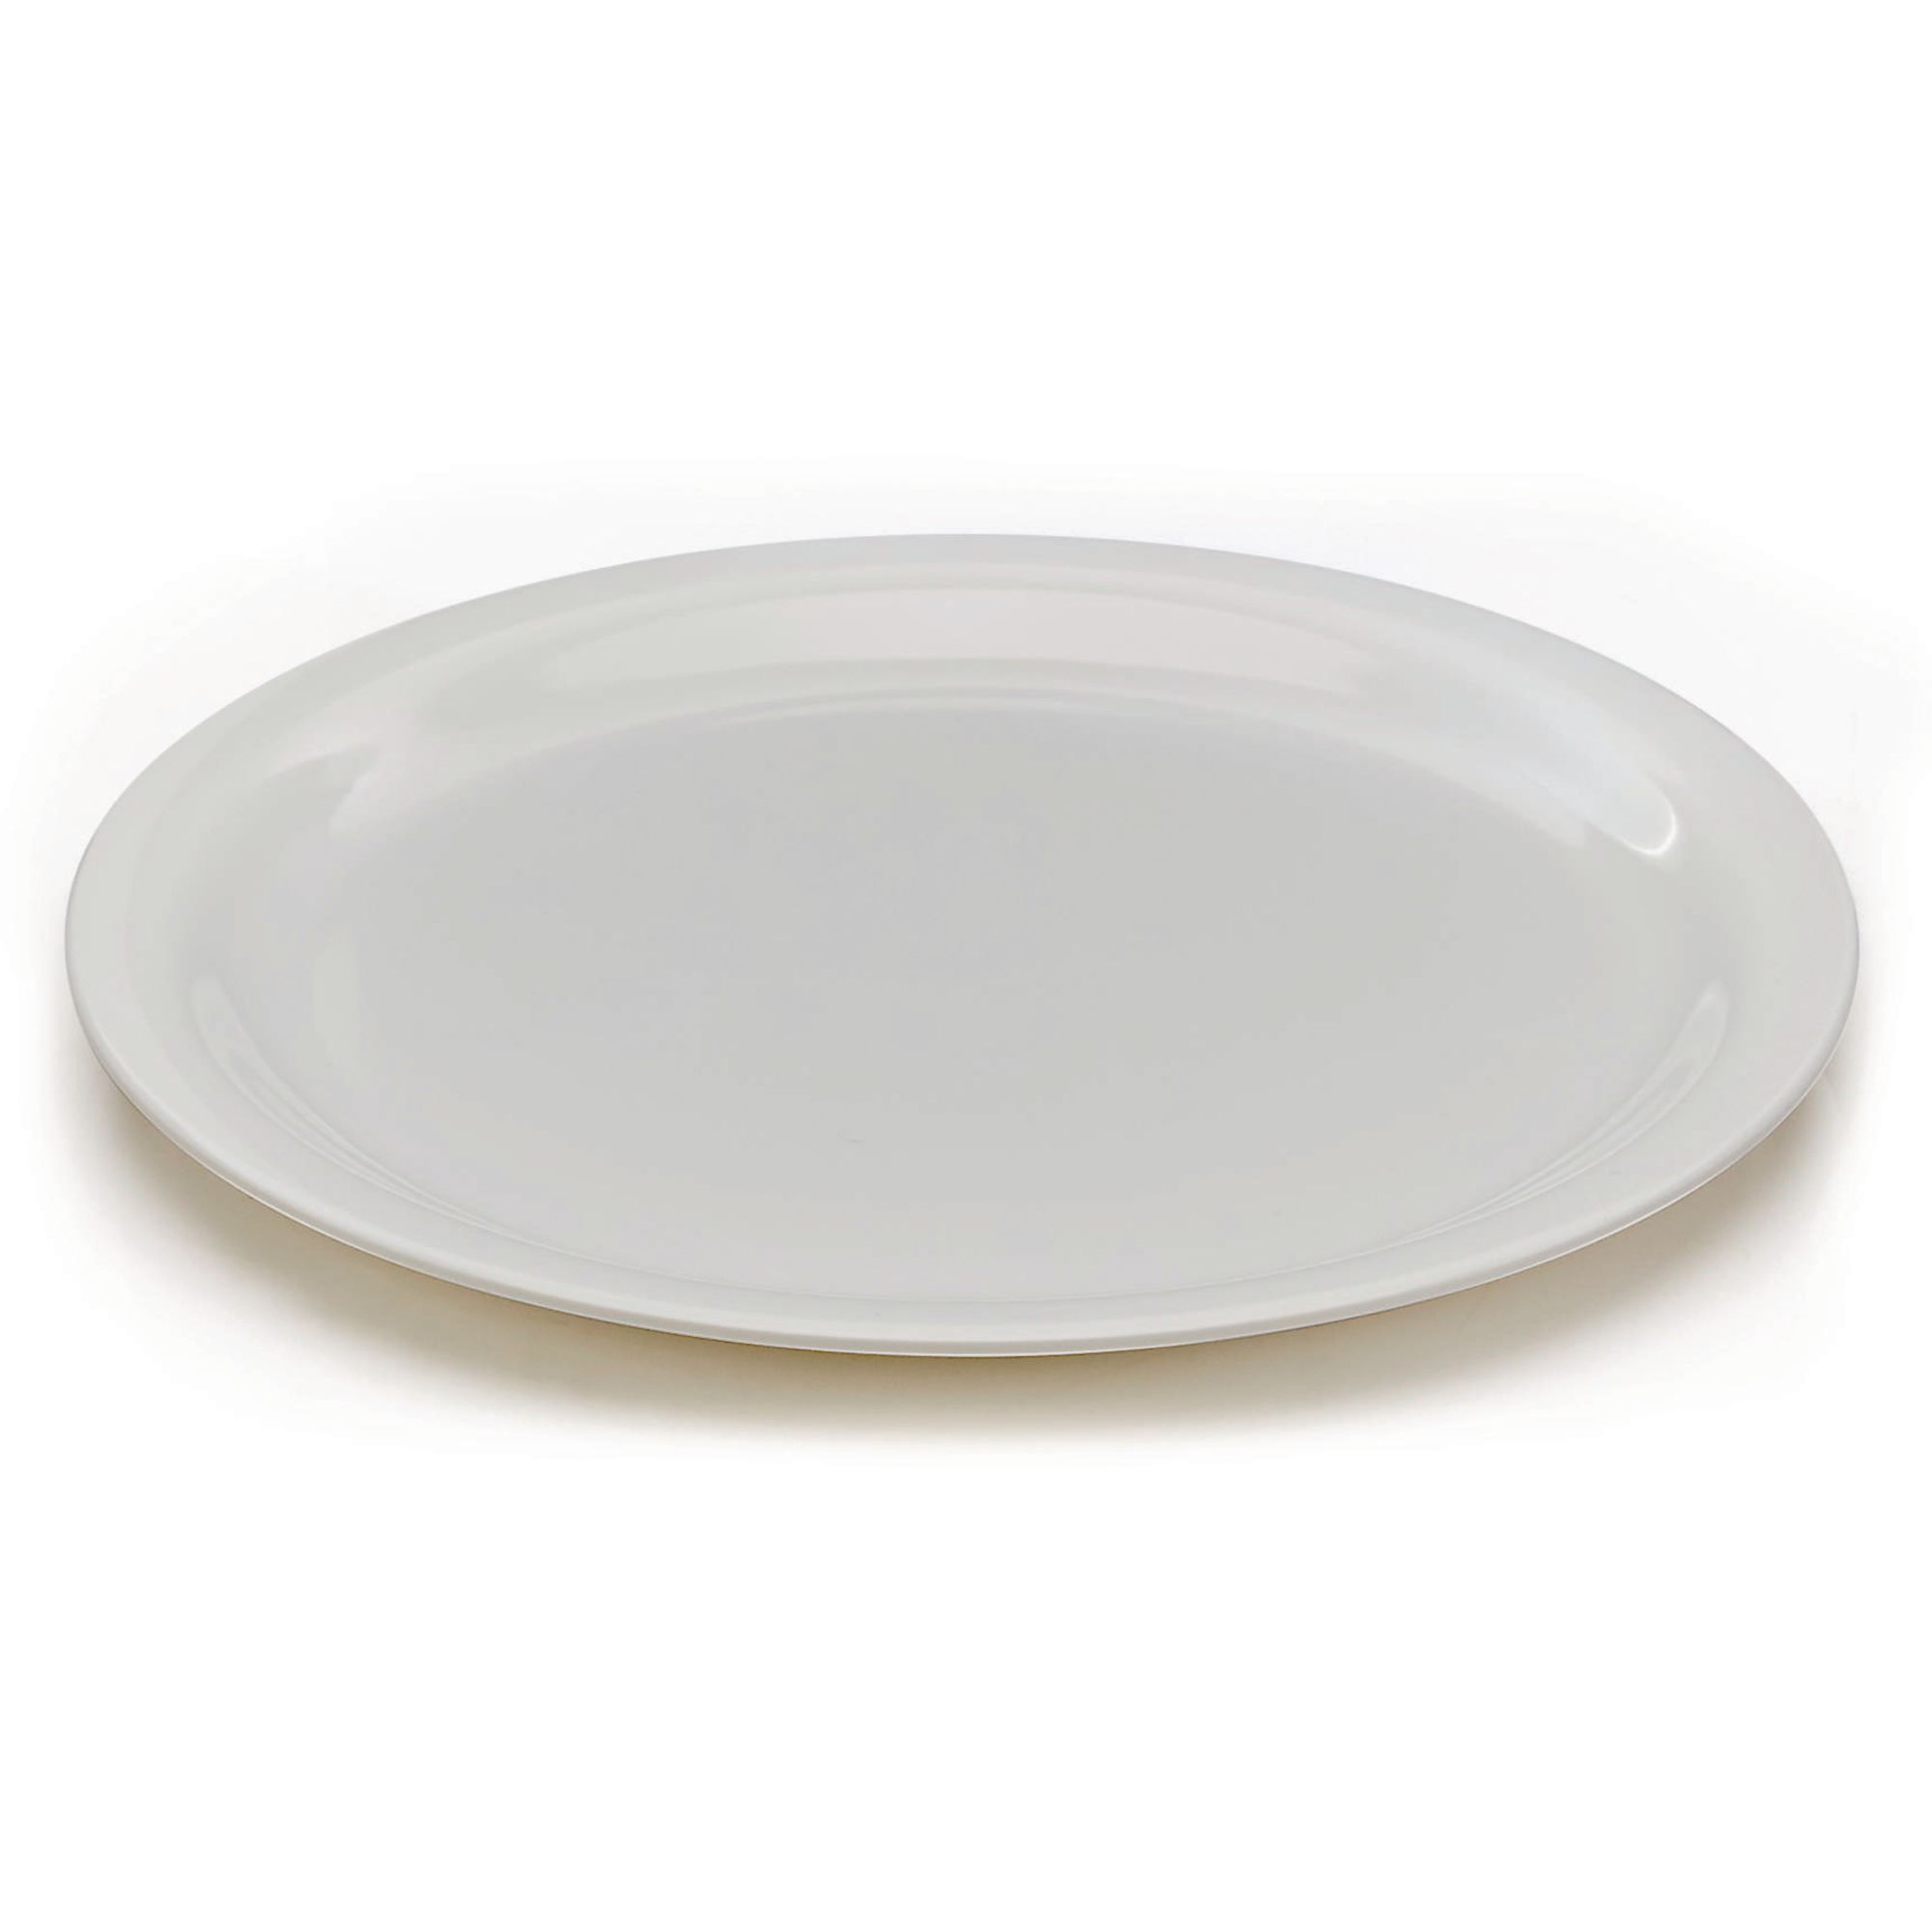 Premium White Melamine 23cm Plate